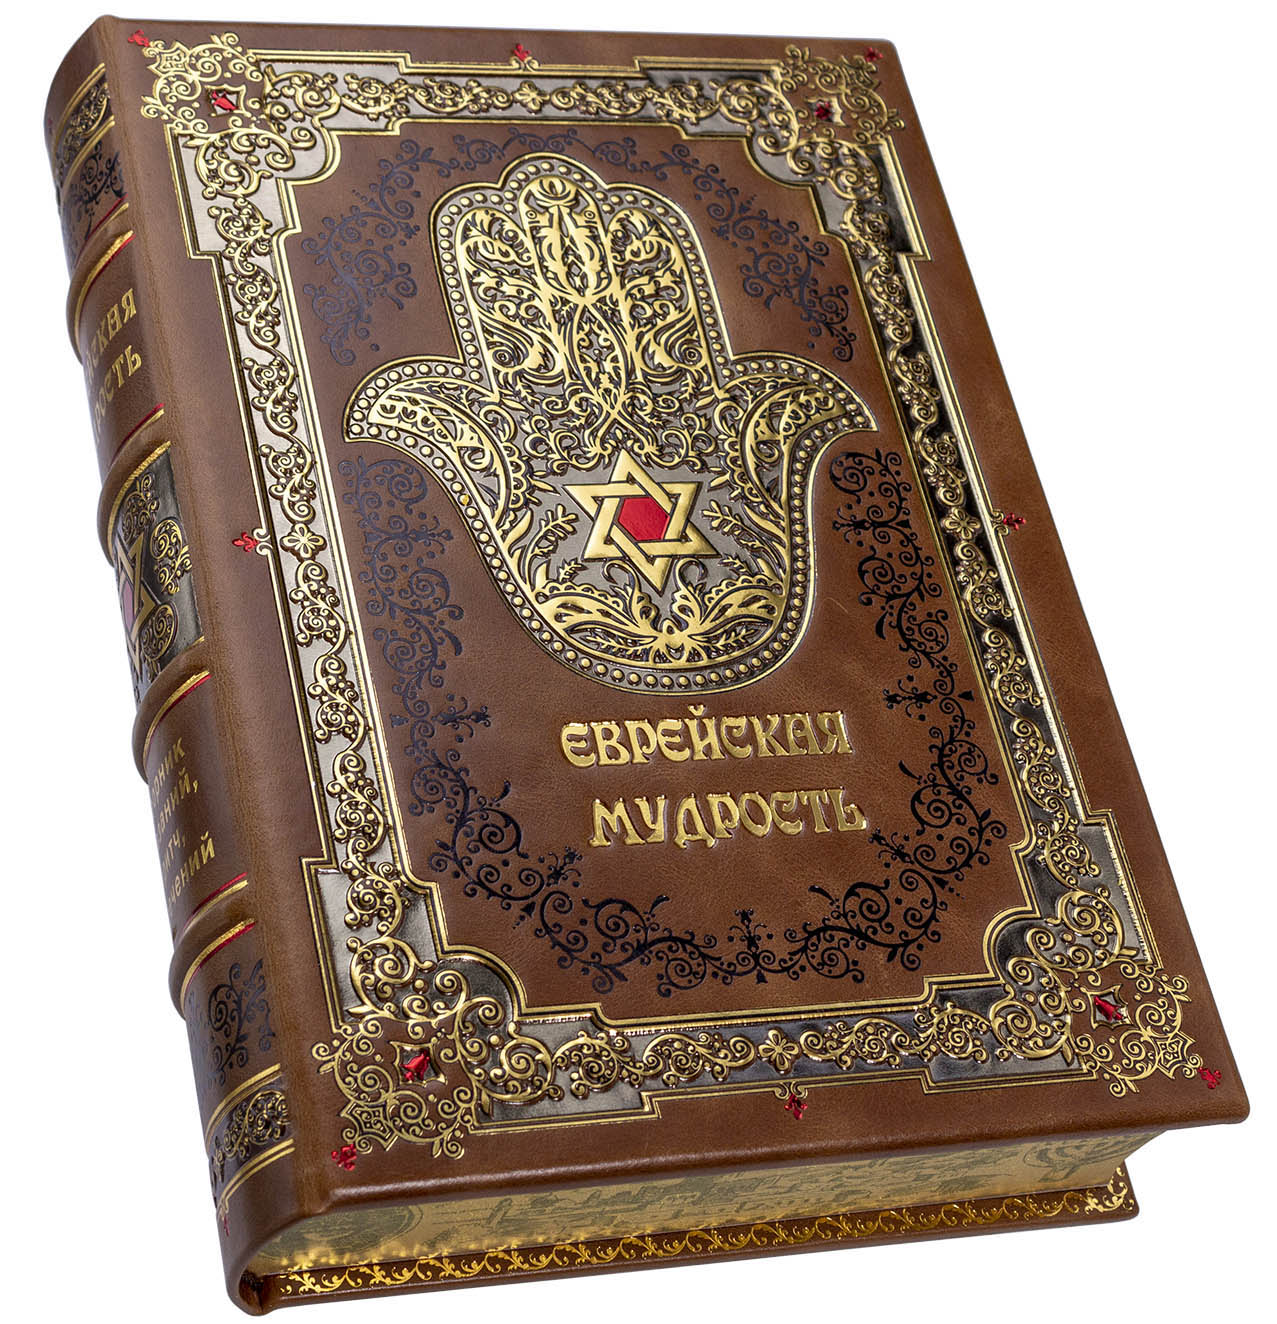 Подарочная книга "Еврейская мудрость" в кожаном переплете